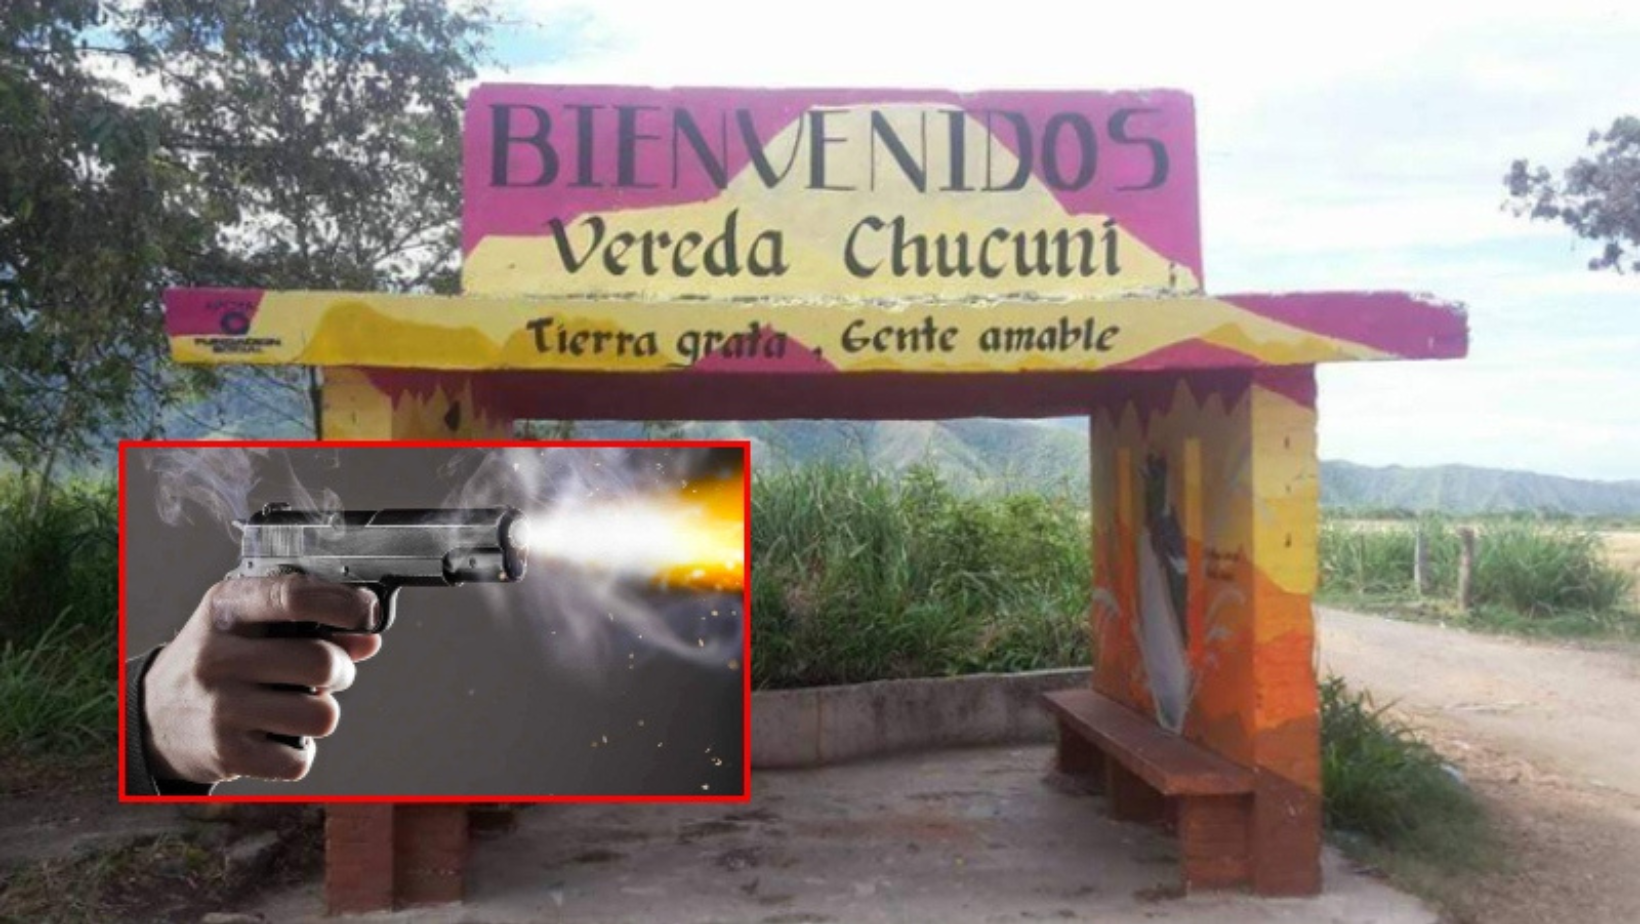 Joven herido de bala en Chucuní lucha por su vida en estado crítico